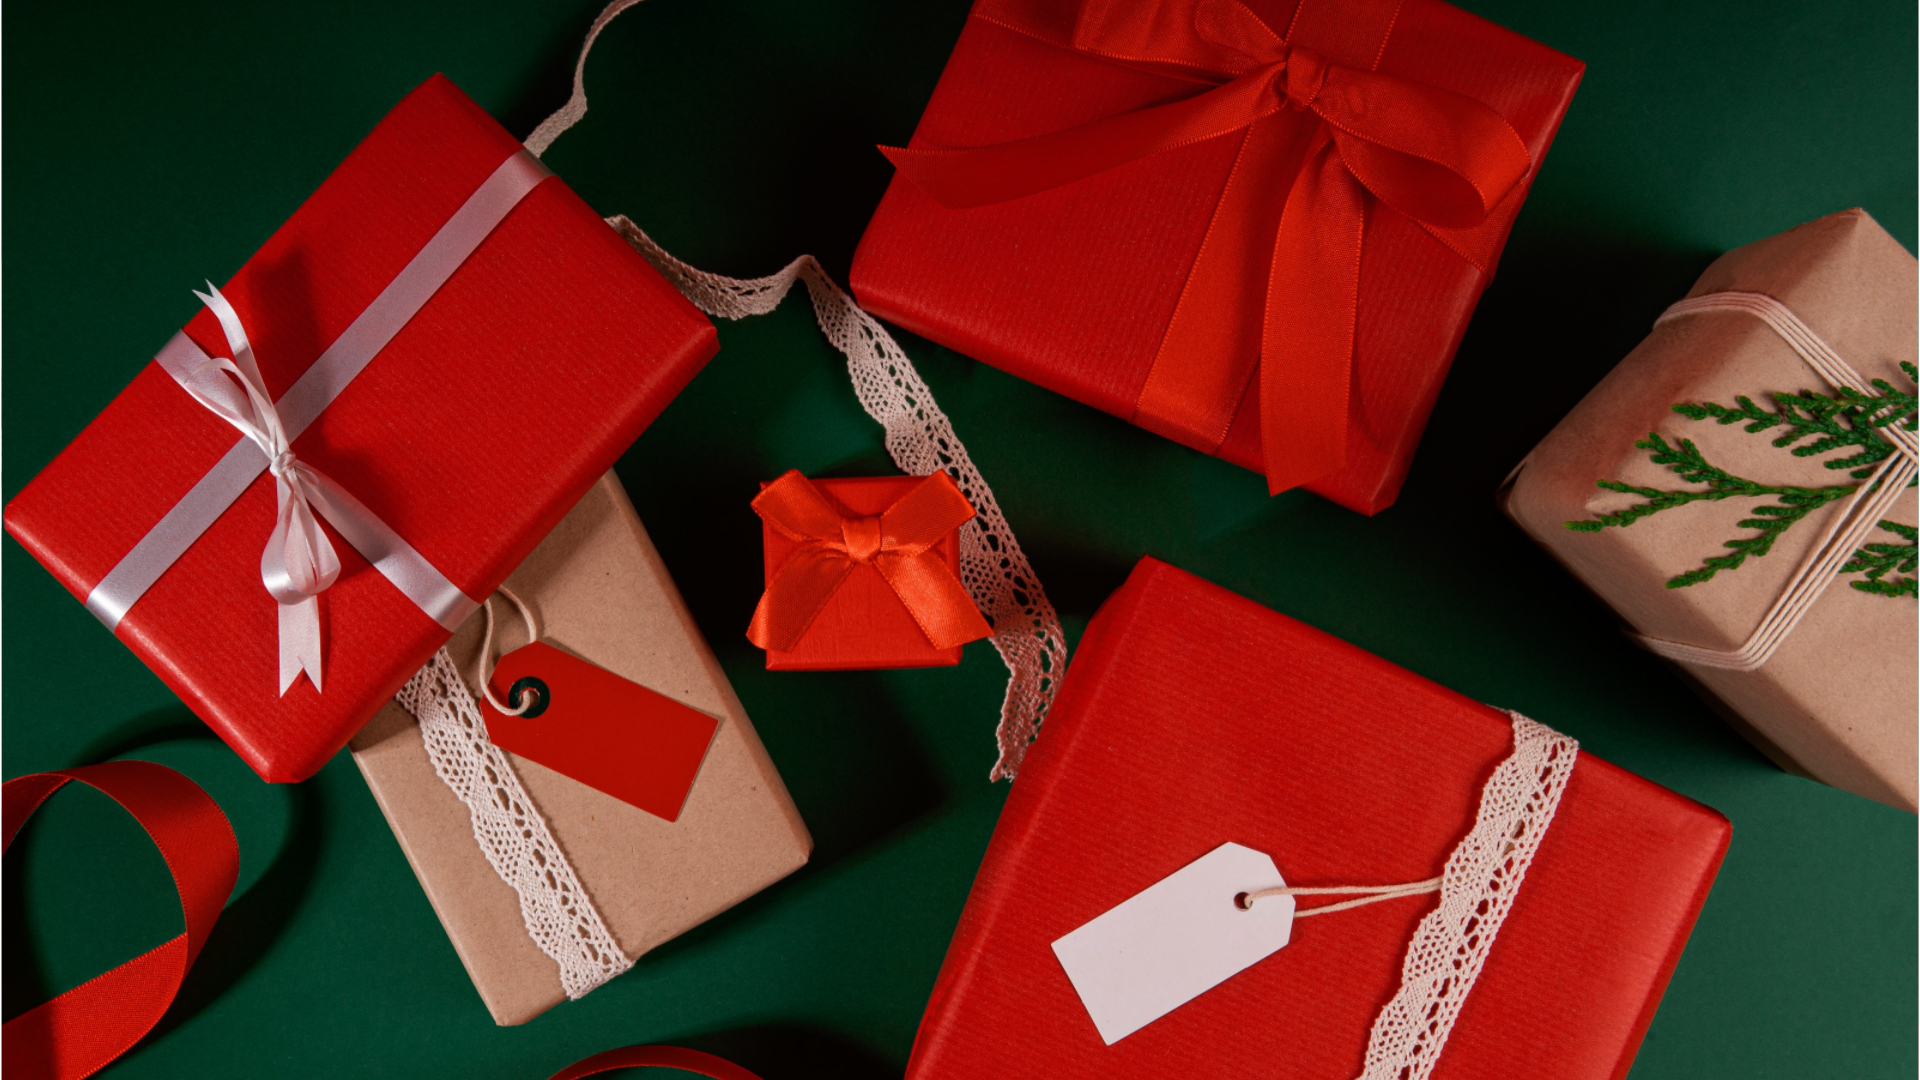 Don manuel, présent d'usage : faut-il déclarer vos cadeaux au fisc ? -  Capital.fr